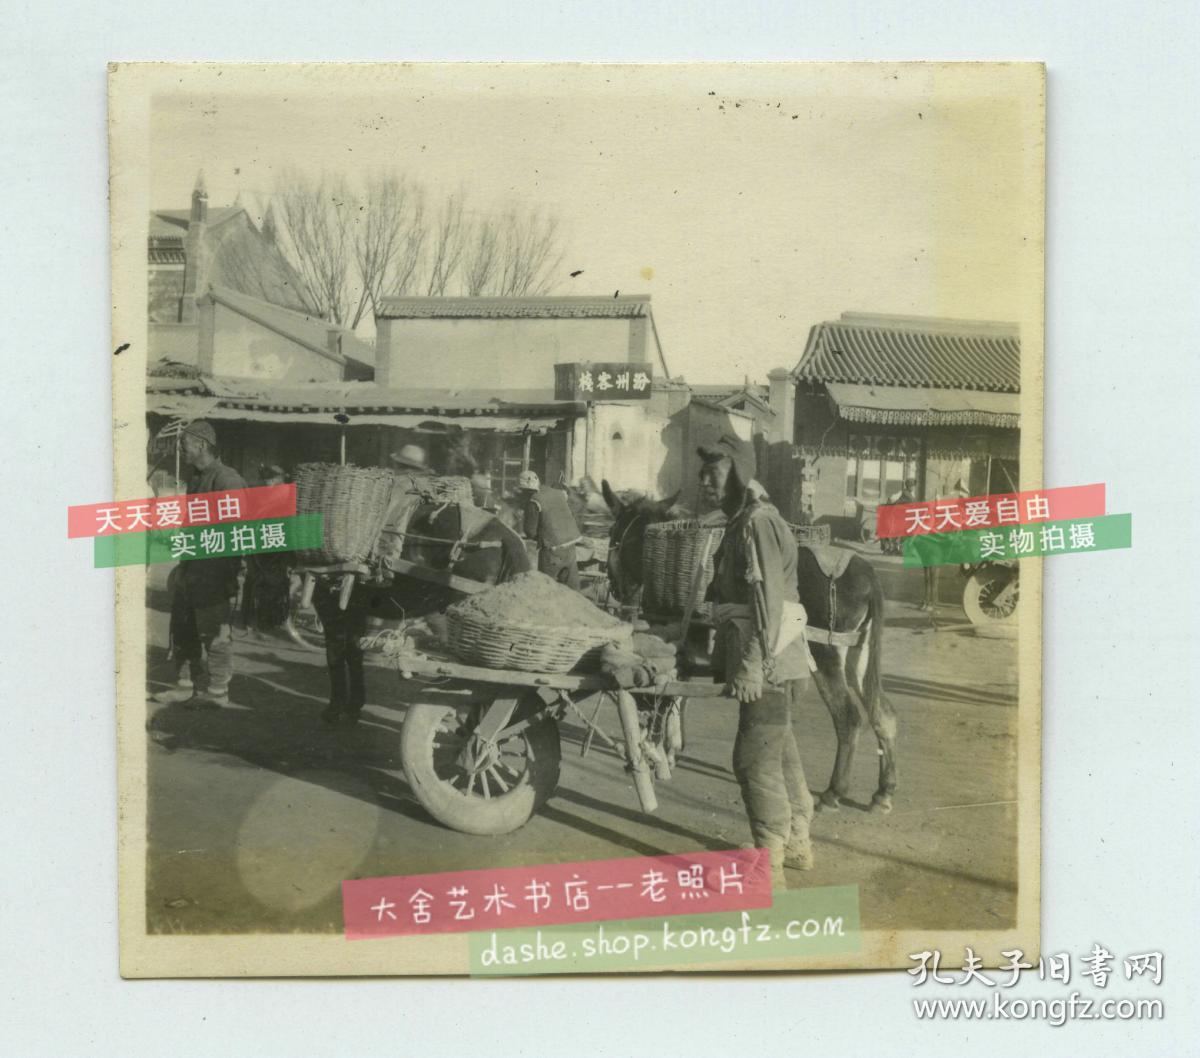 民国时期日军占领下的山西省汾州府街道,推太